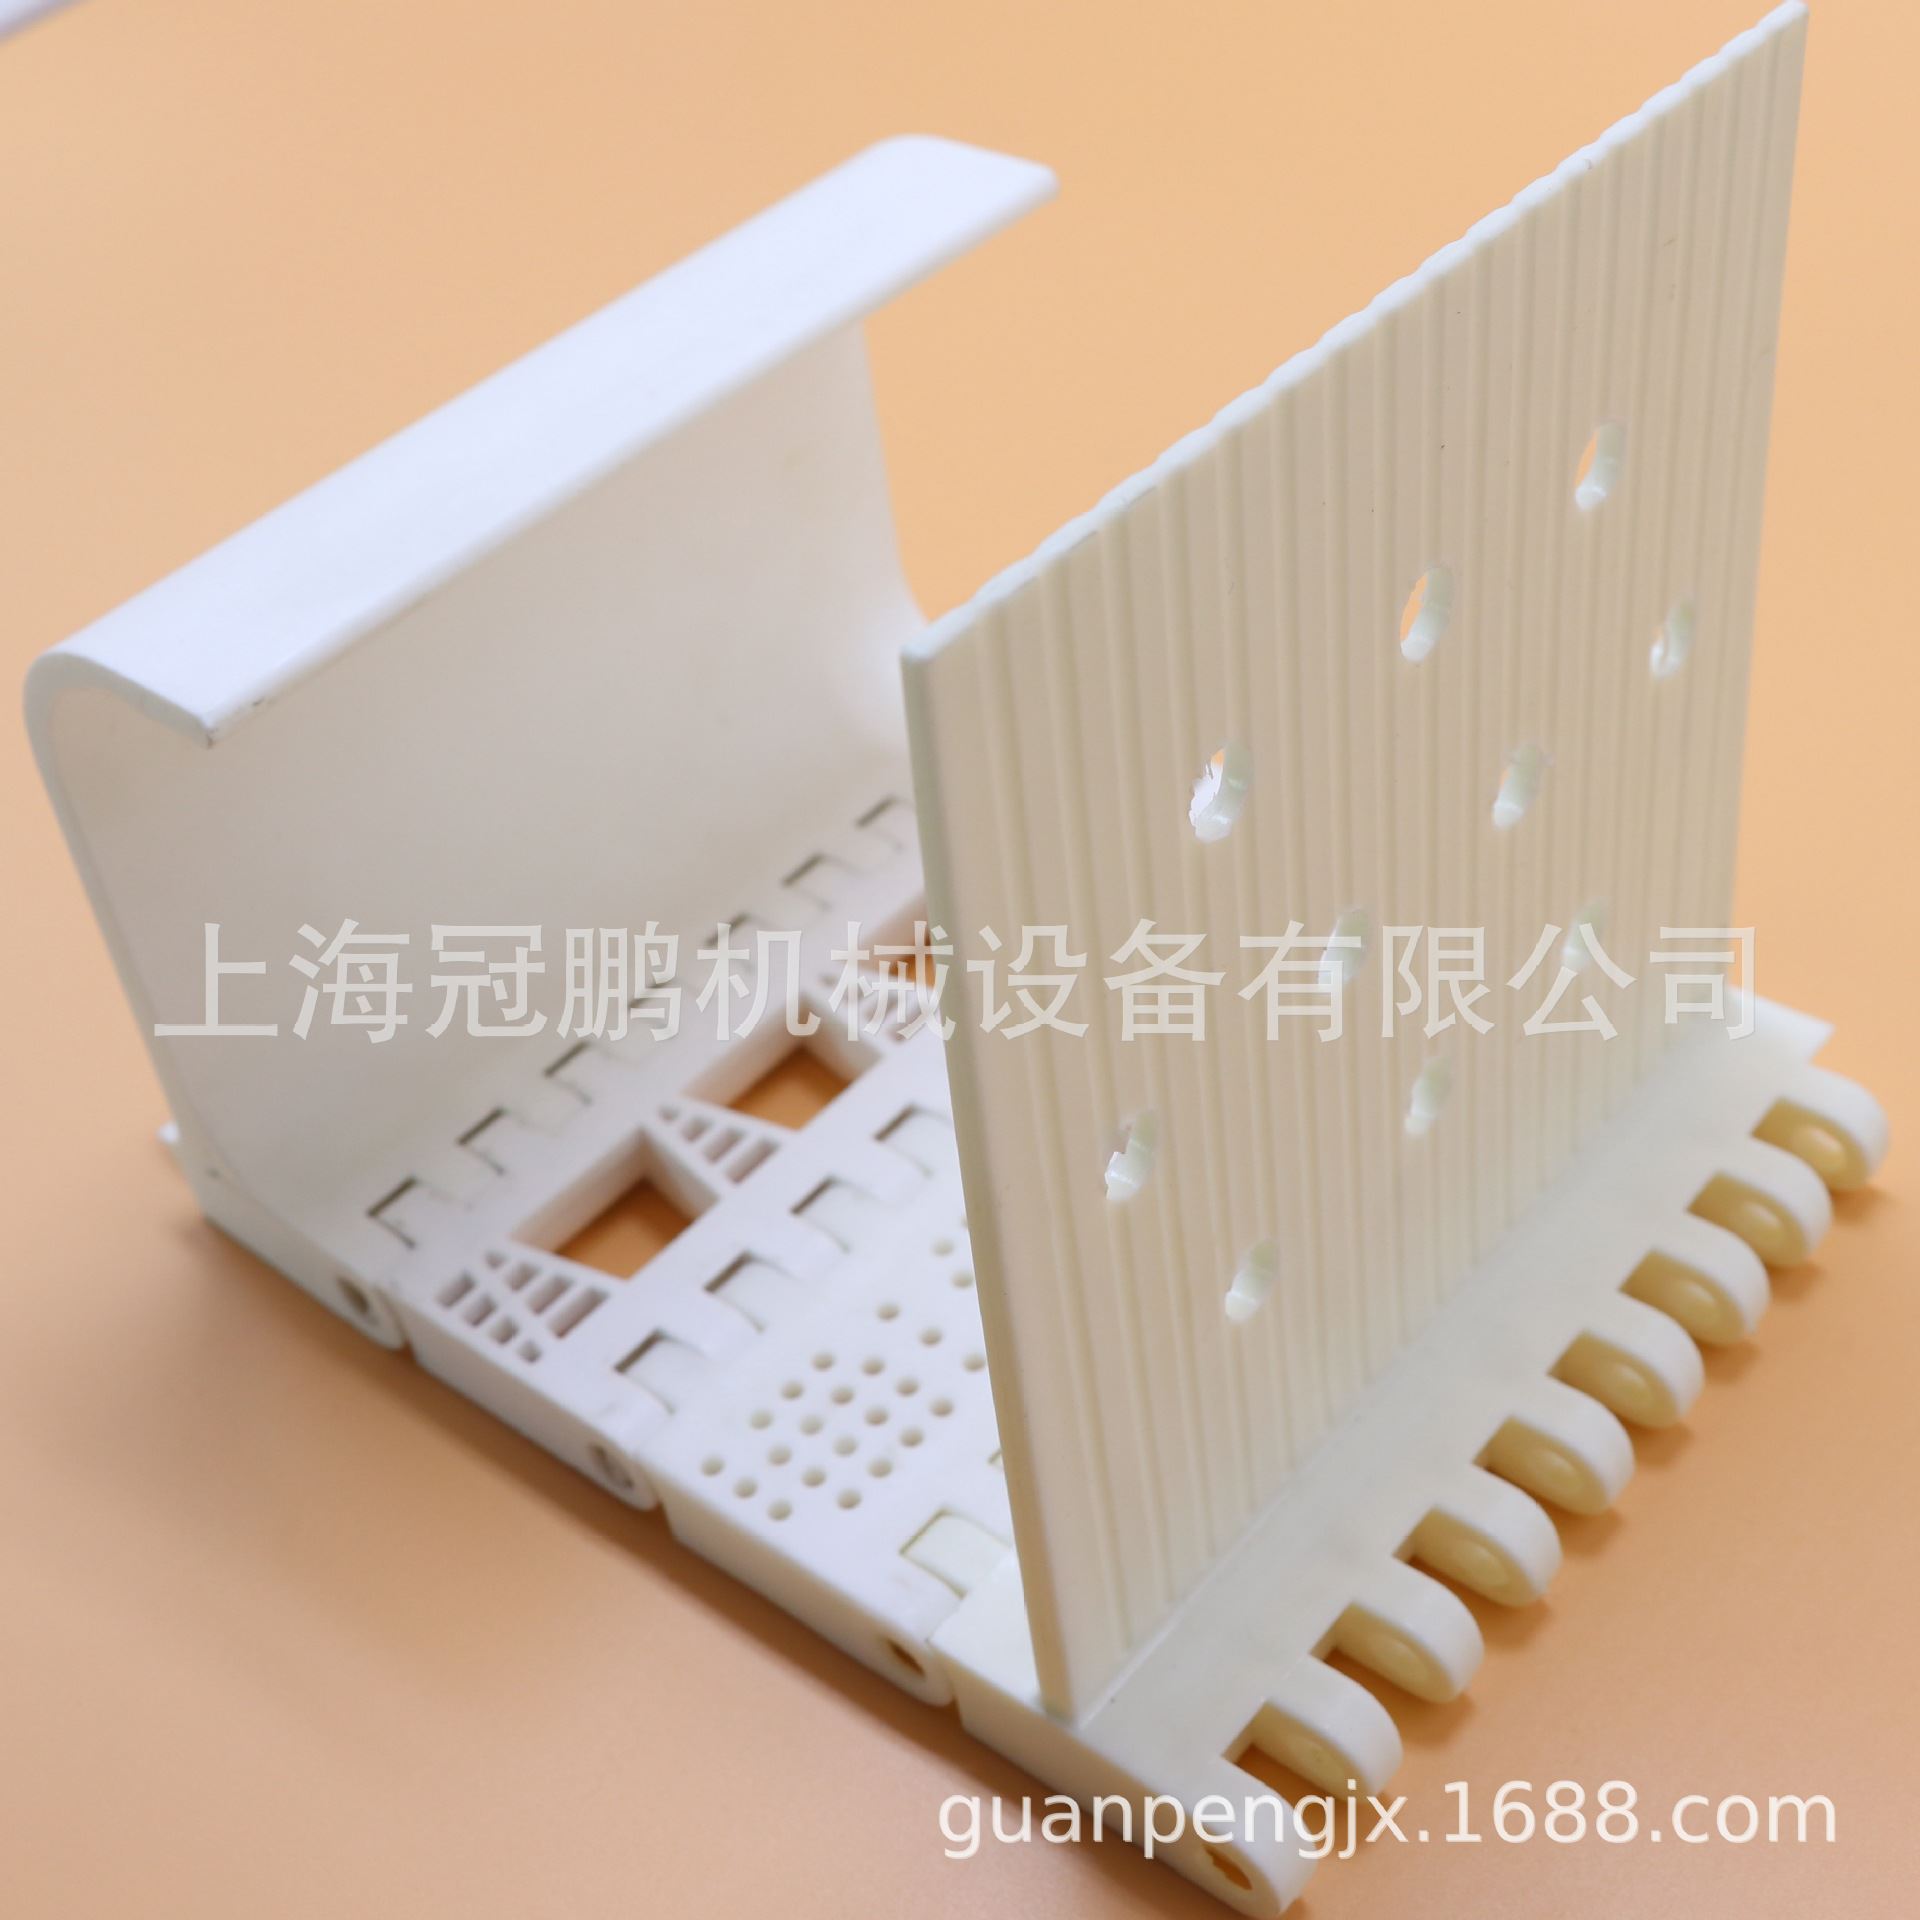 上海OPB模块运送网带爬坡裙边挡板塑料模组链烘干机网带输送 现货